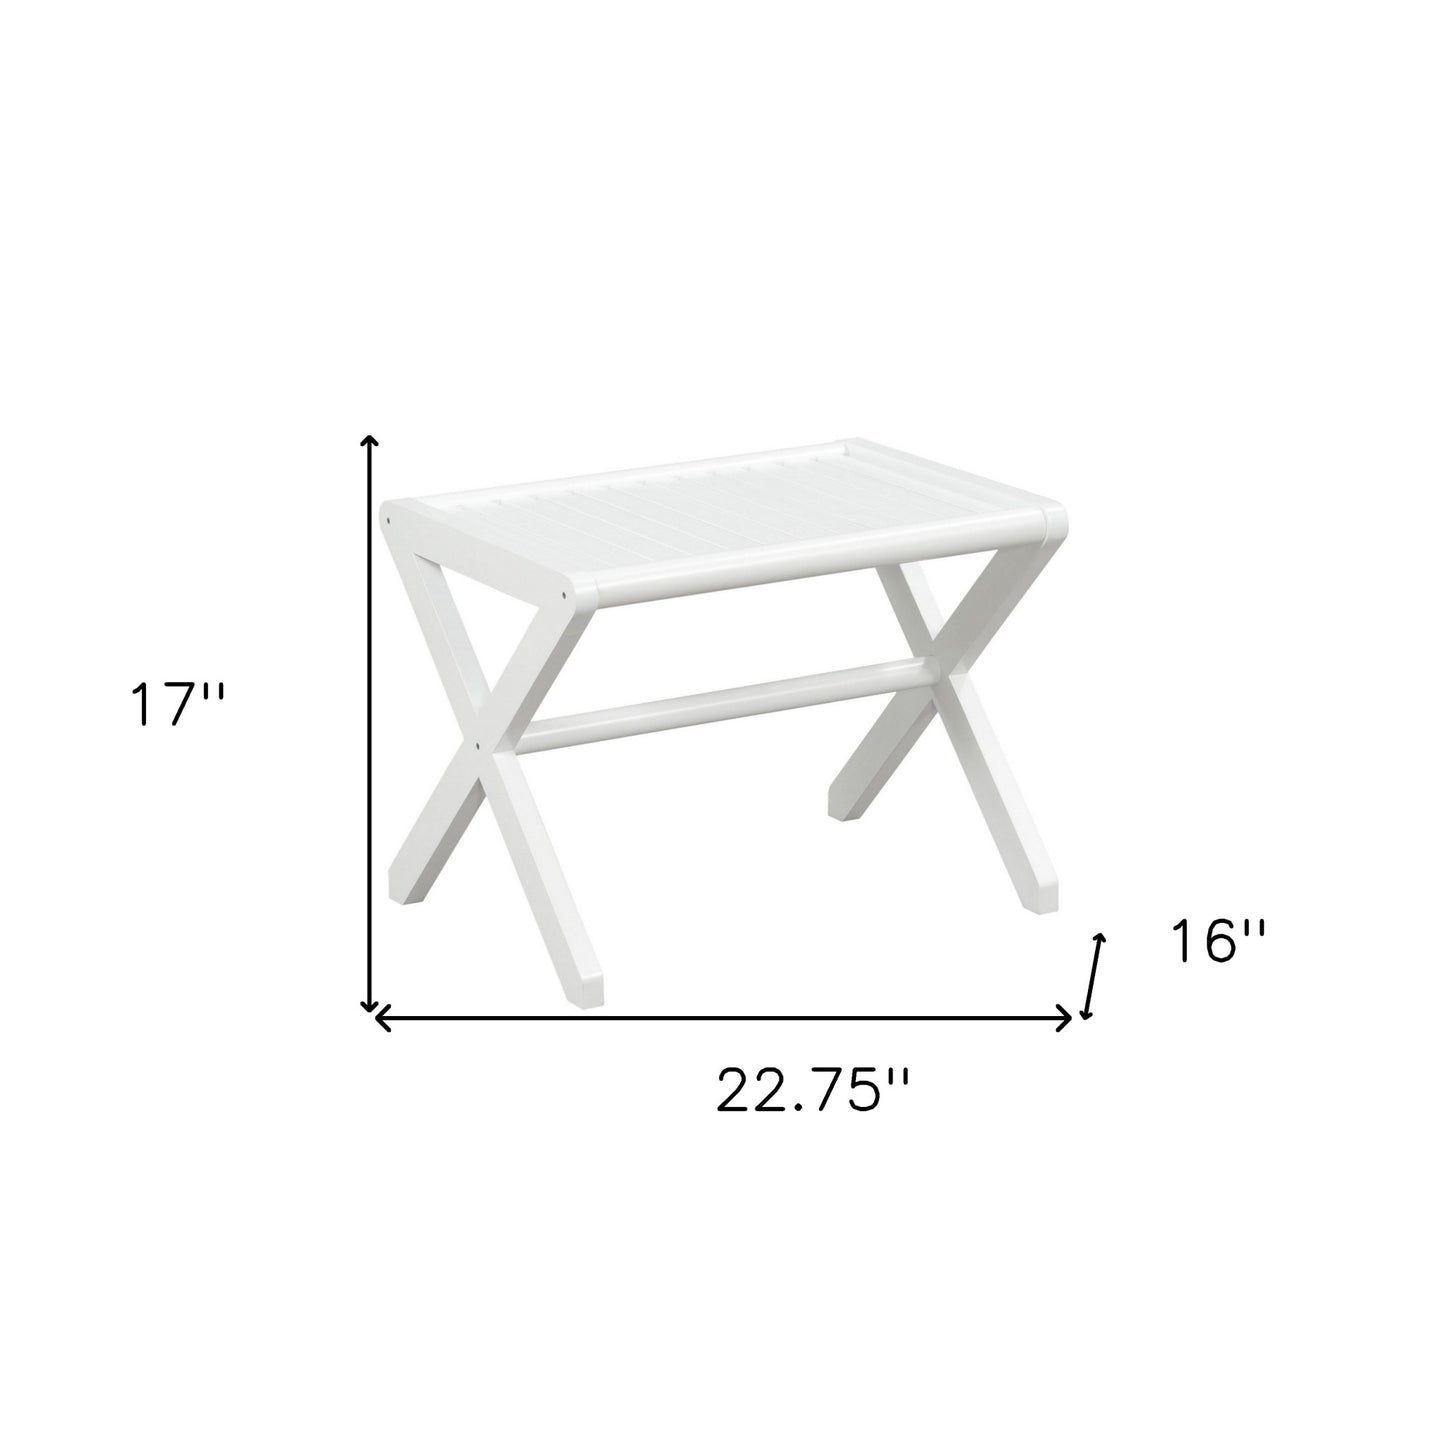 17" White Backless Bar Chair